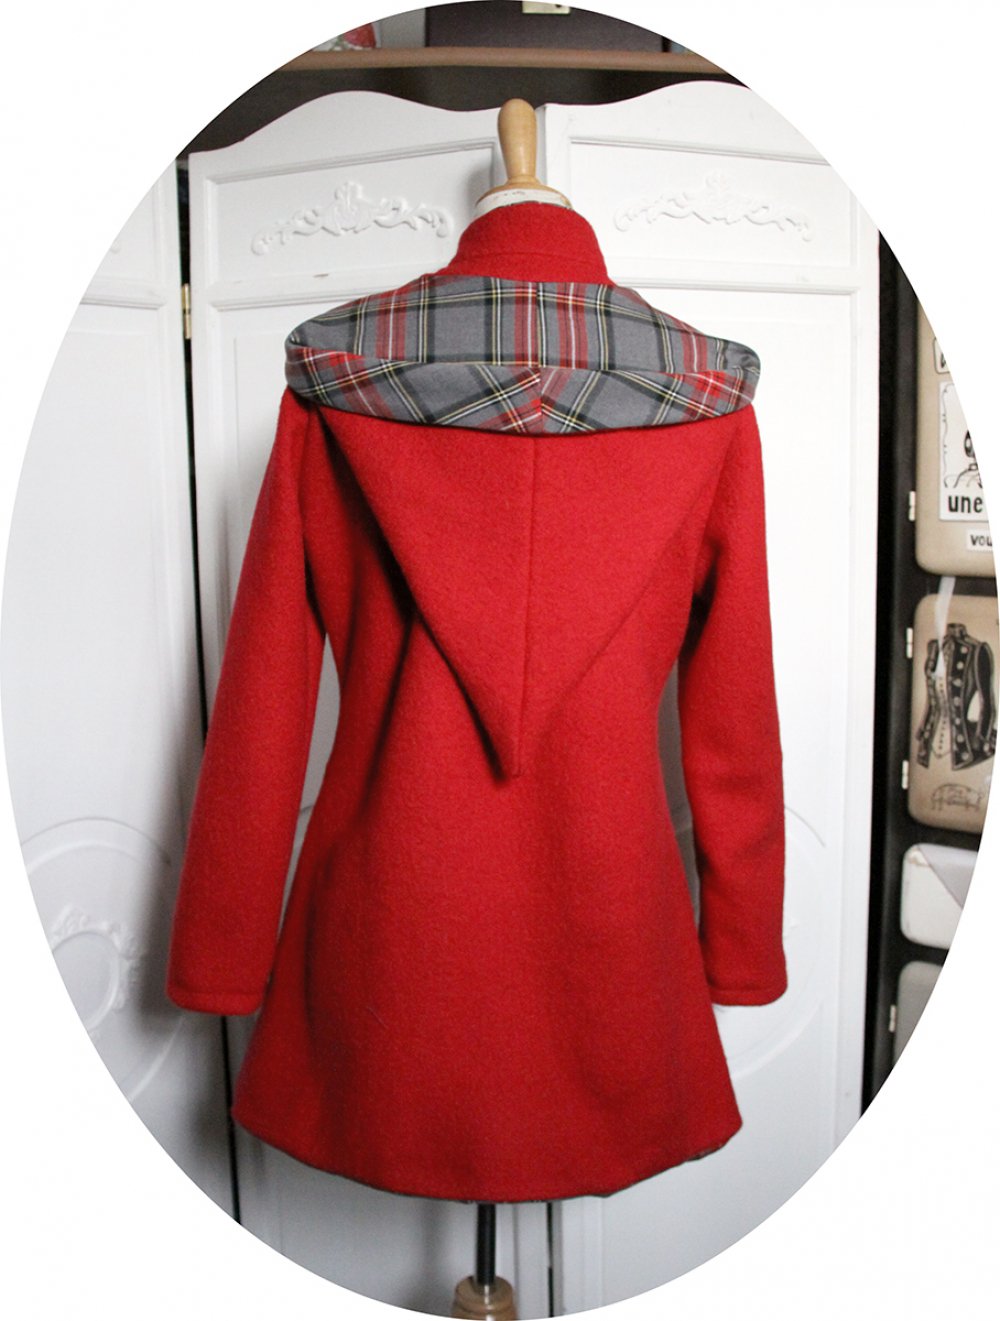 Veste croisée en laine bouillie rouge et tissu écossais gris--9996057703463